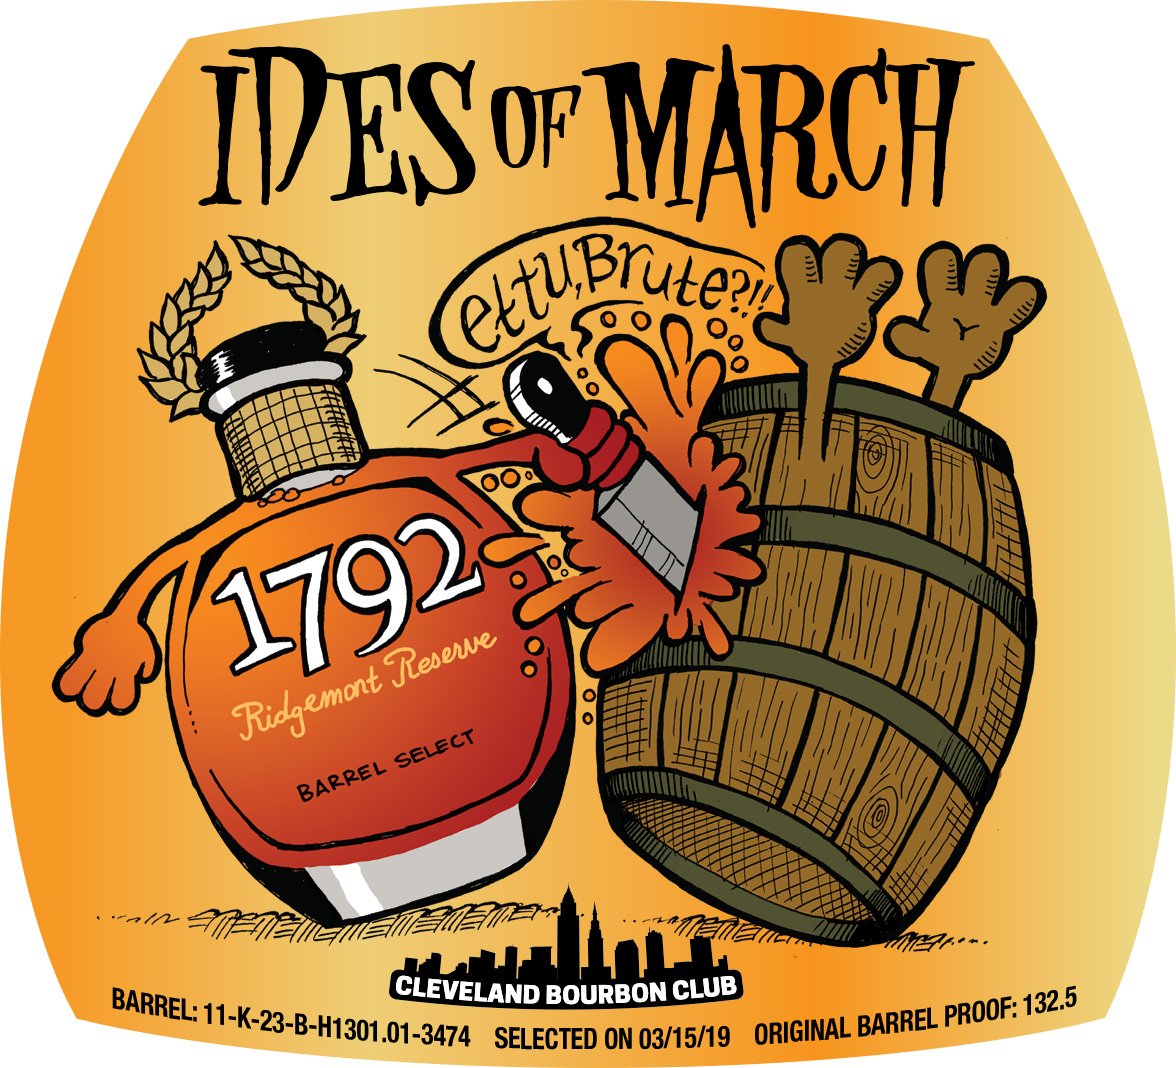 Ides of March Bourbon Label